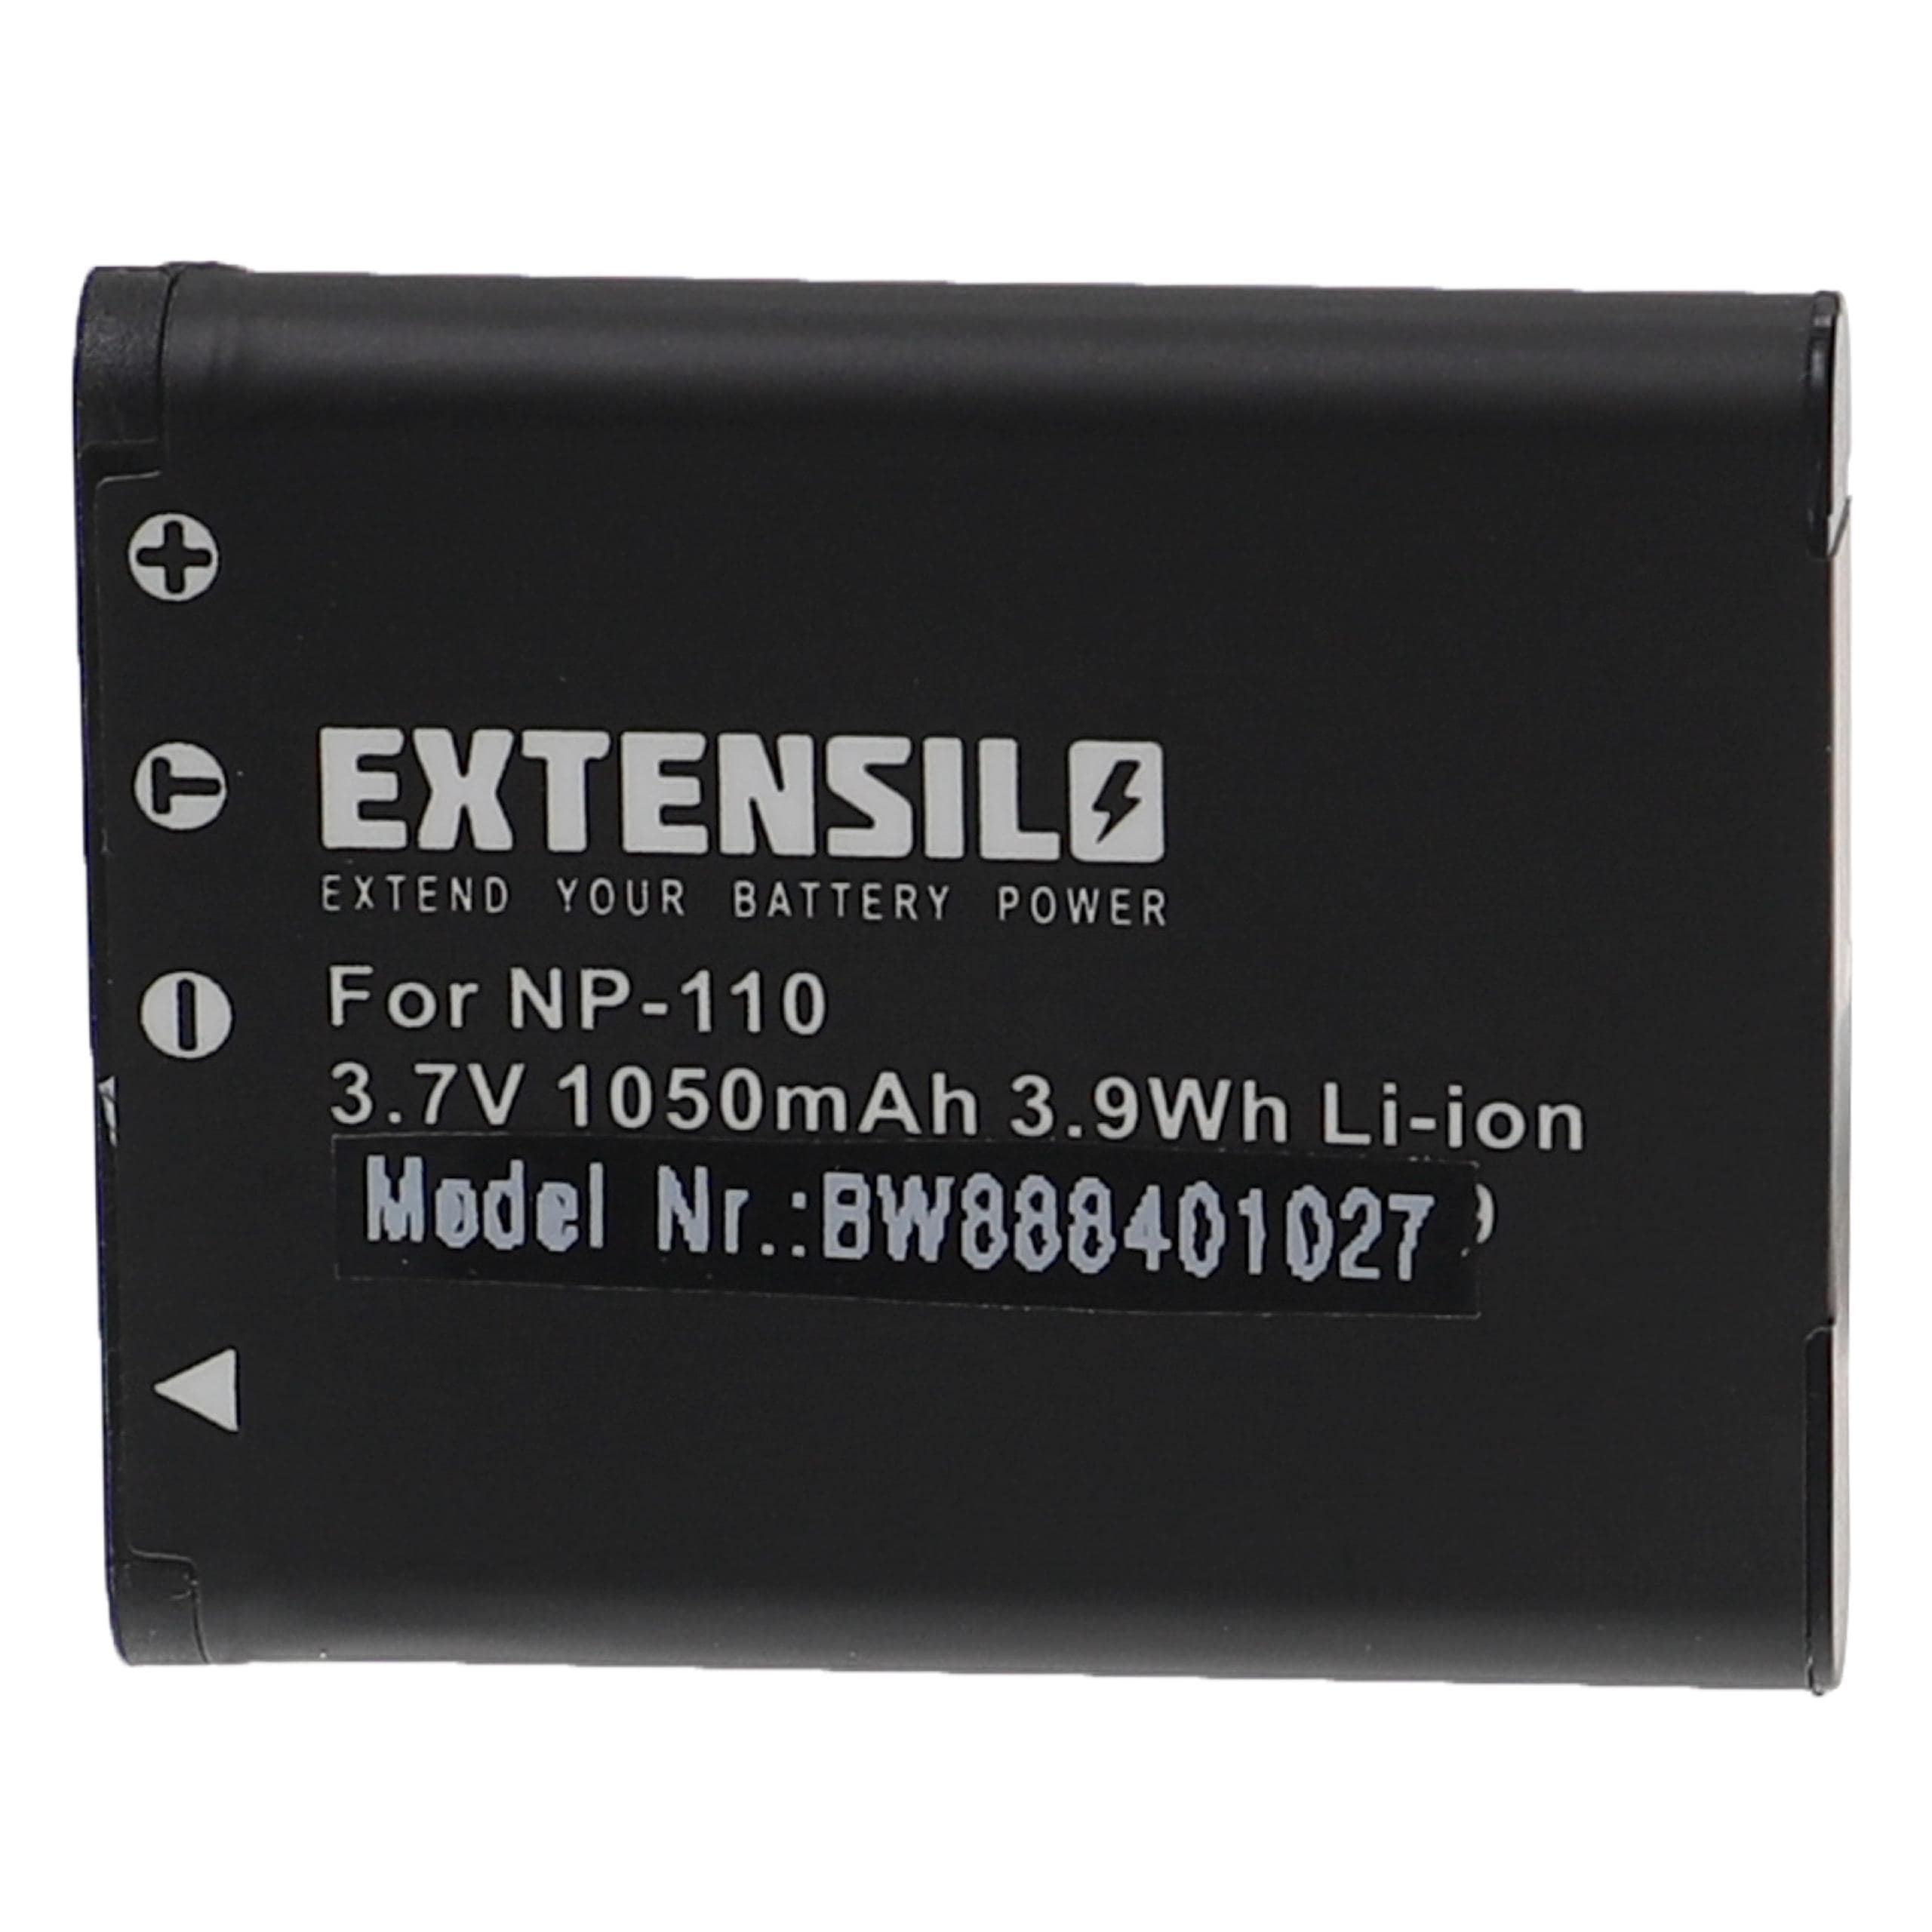 Batterie remplace Casio NP-160, NP-110DBA, NP-110, NP-110L pour appareil photo - 1050mAh 3,7V Li-ion